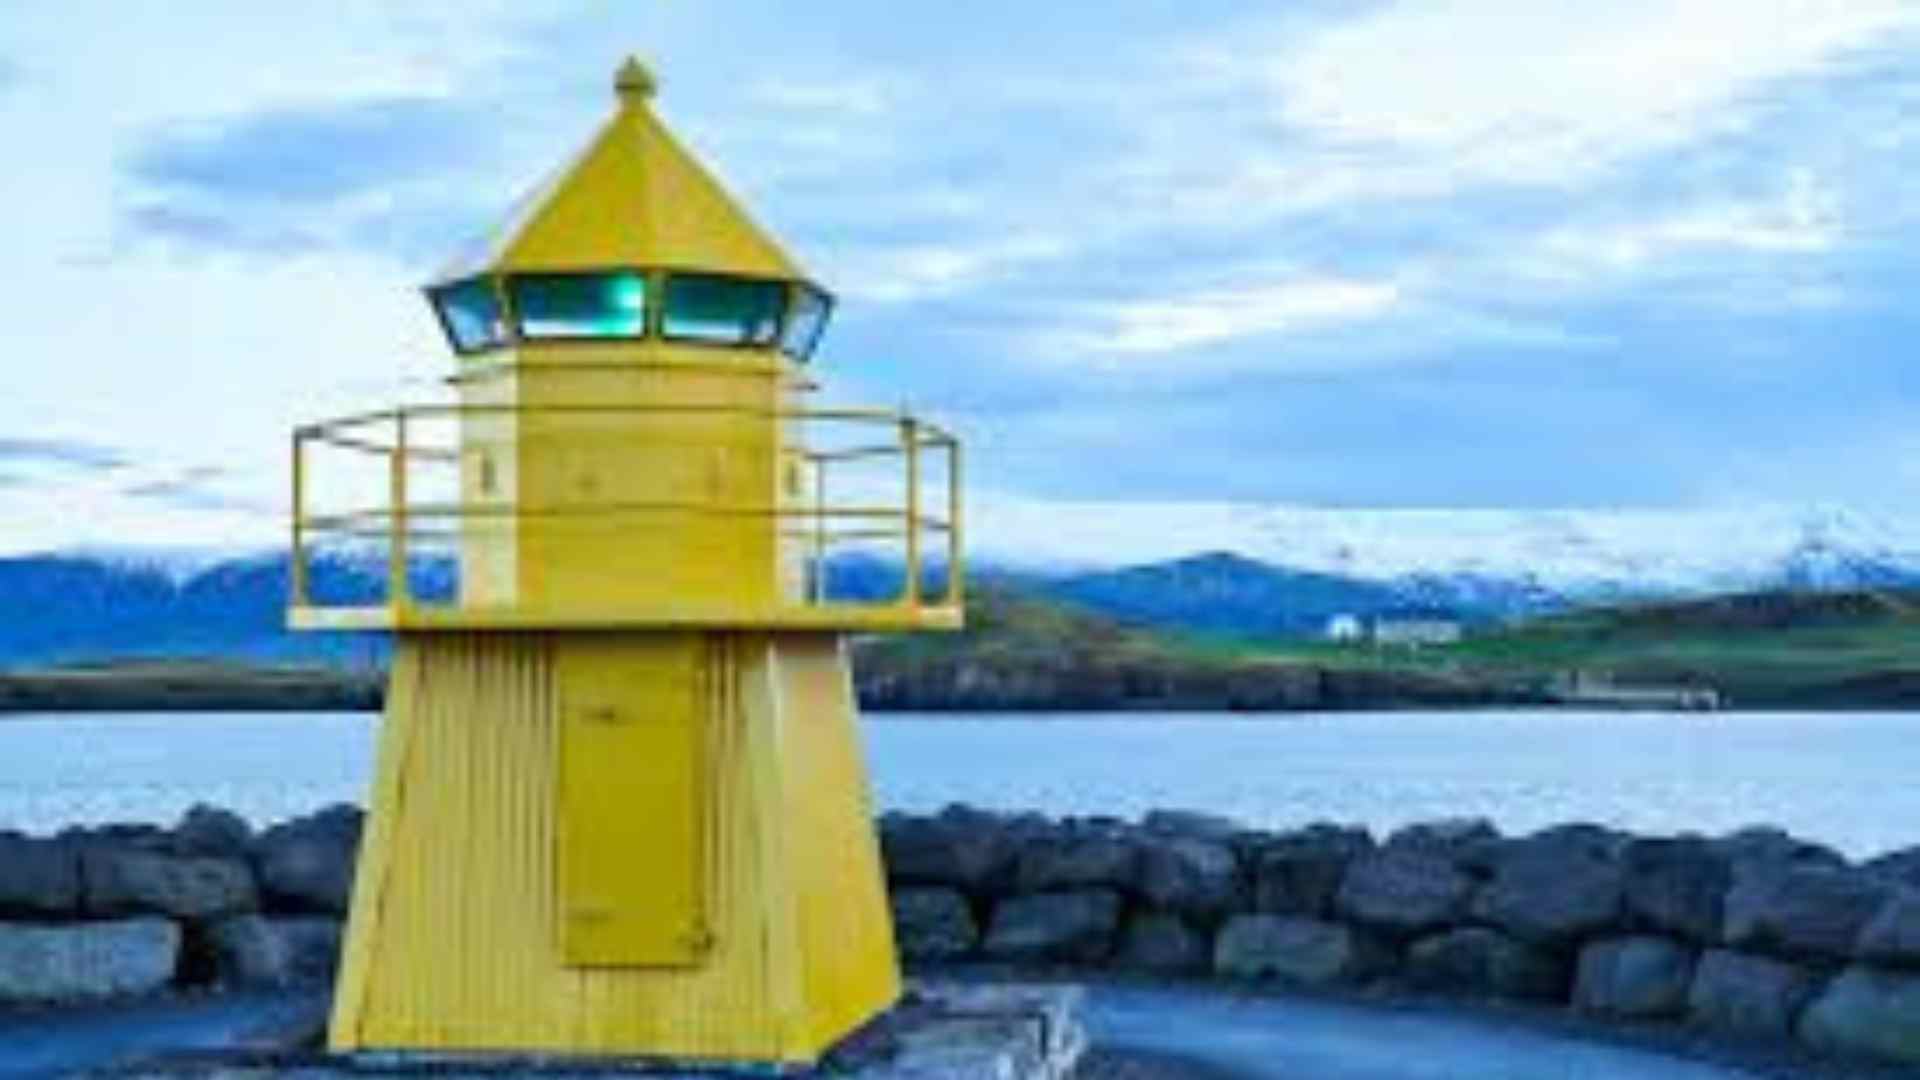 Viðey Island Lighthouse